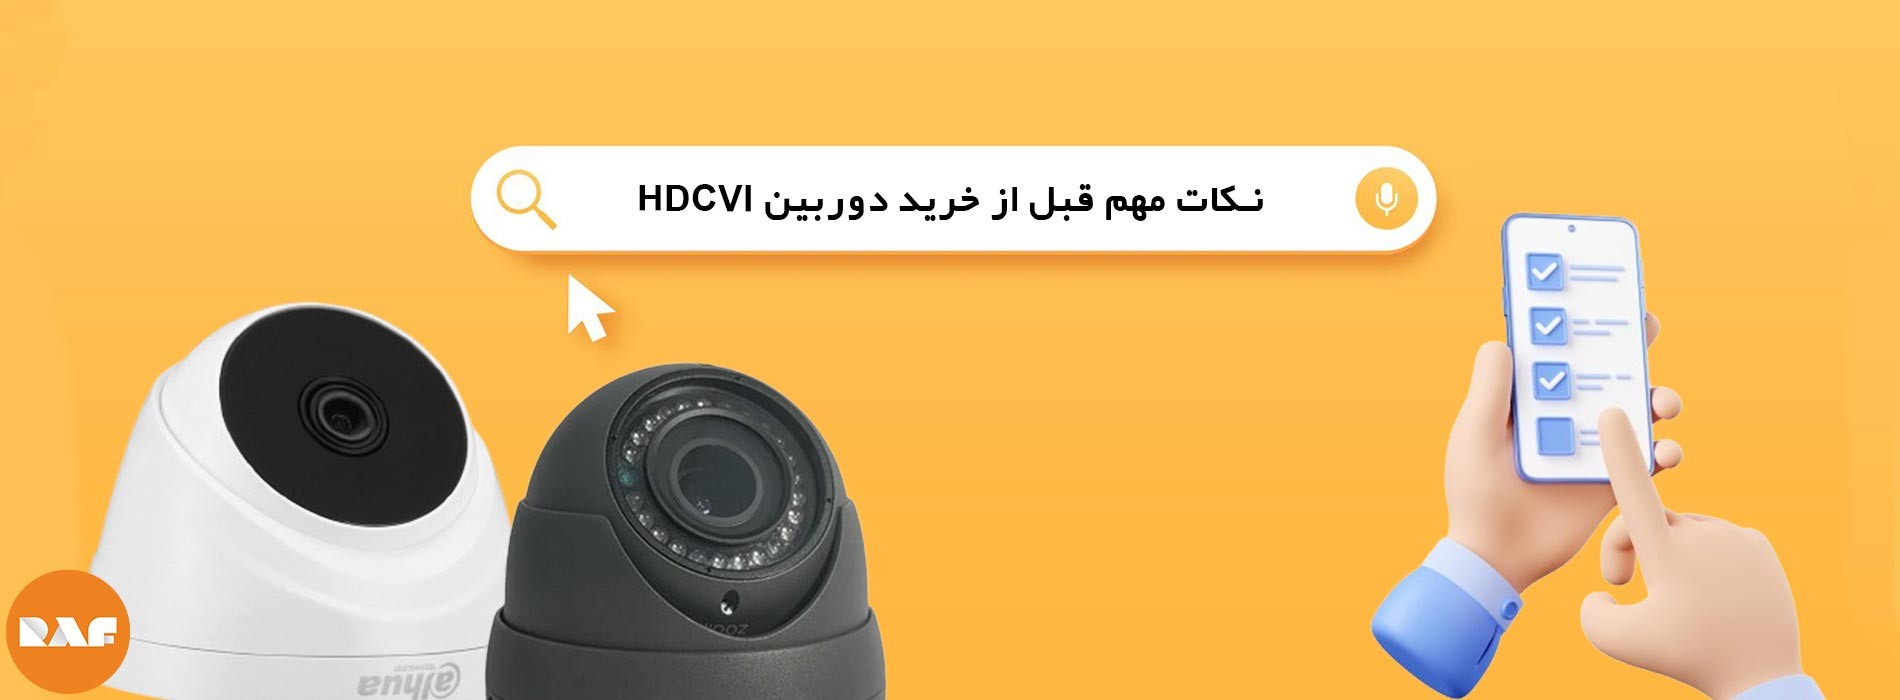 نکات مهم قبل از خرید دوربین مداربسته HDCVI